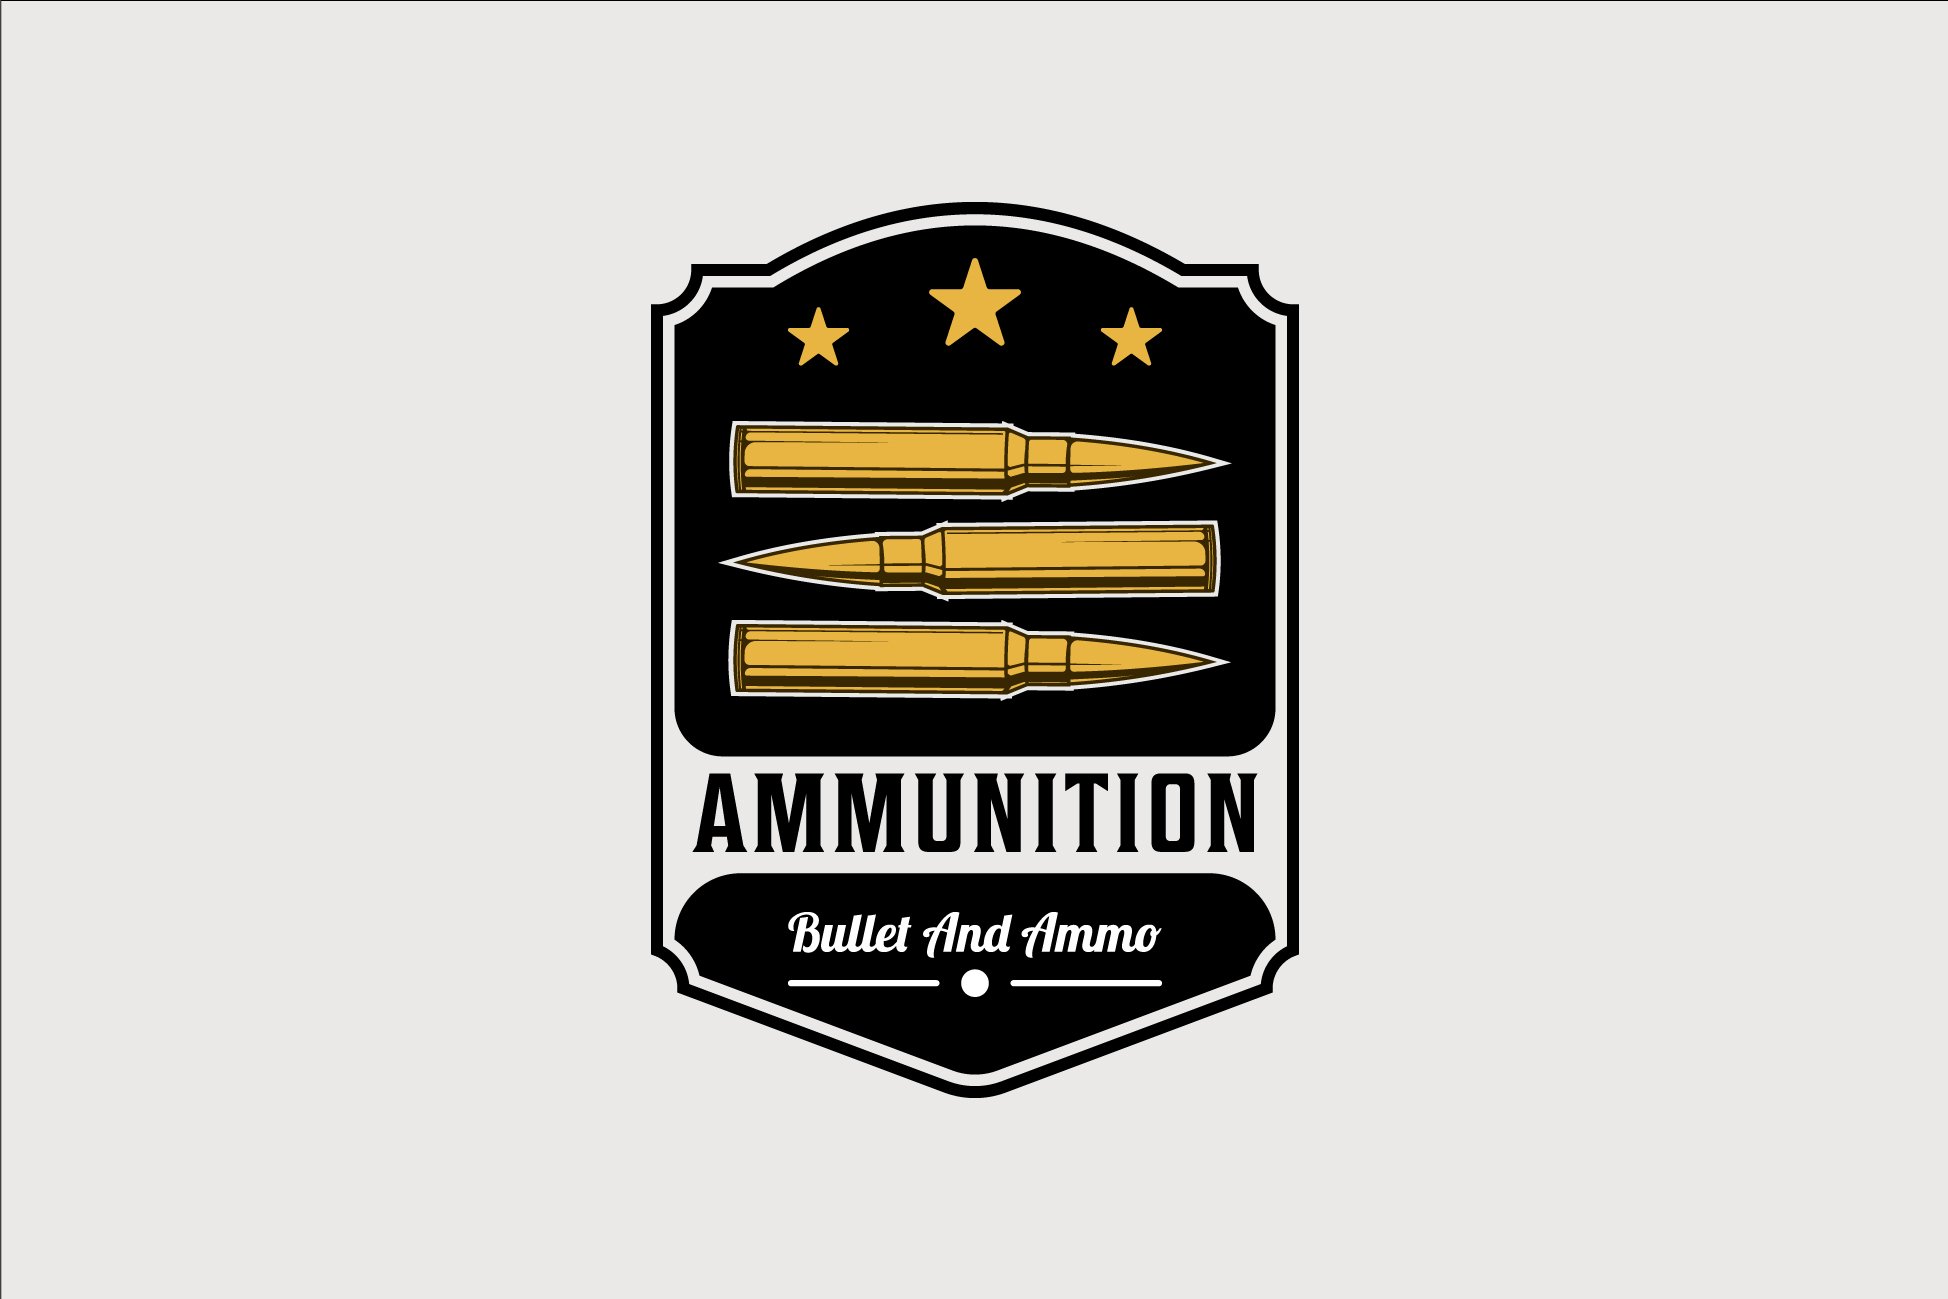 ammo or bullet emblem logo vintage cover image.